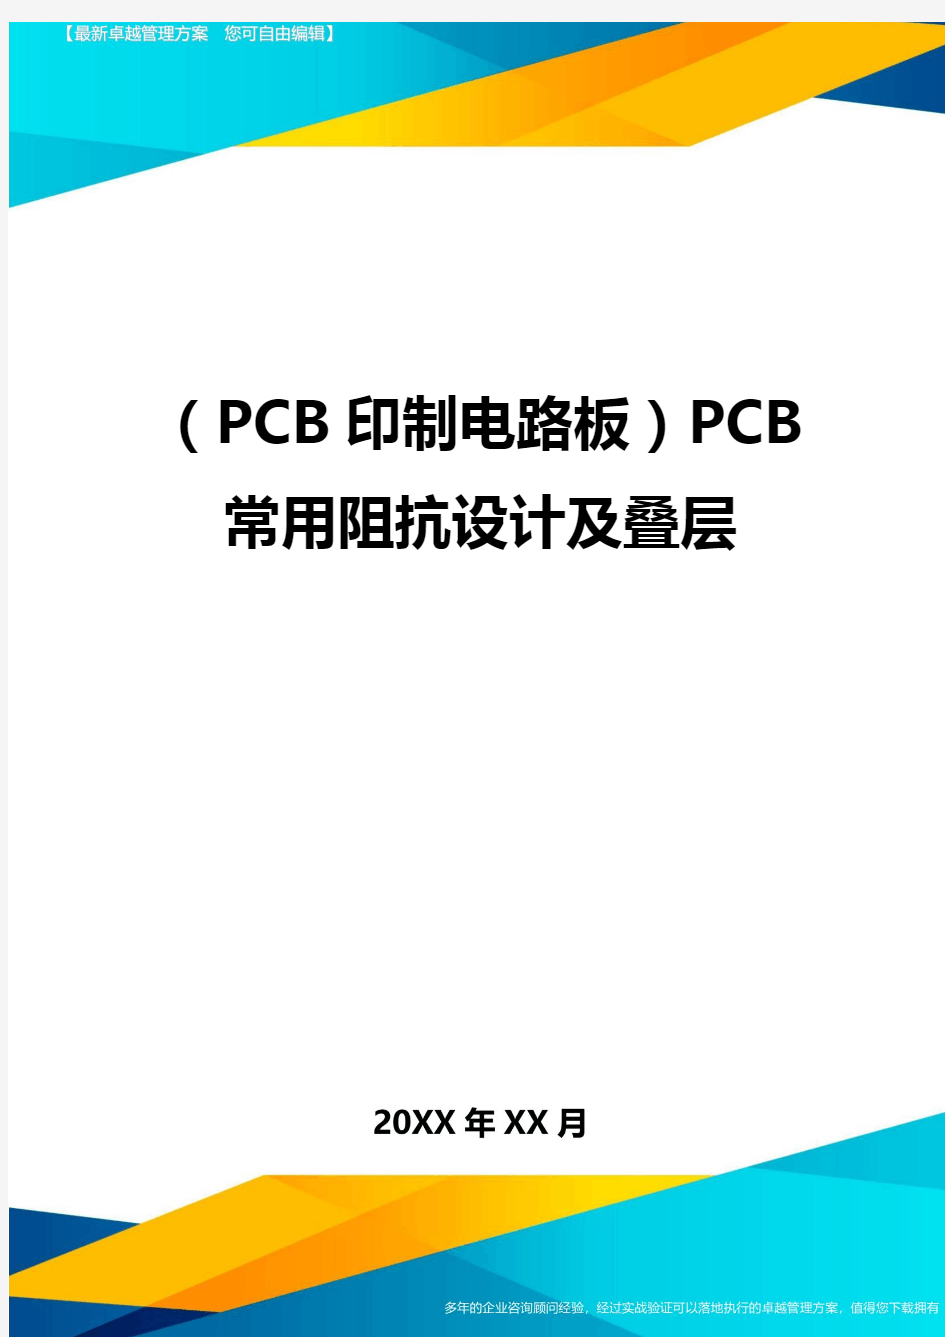 (PCB印制电路板)PCB常用阻抗设计及叠层最全版